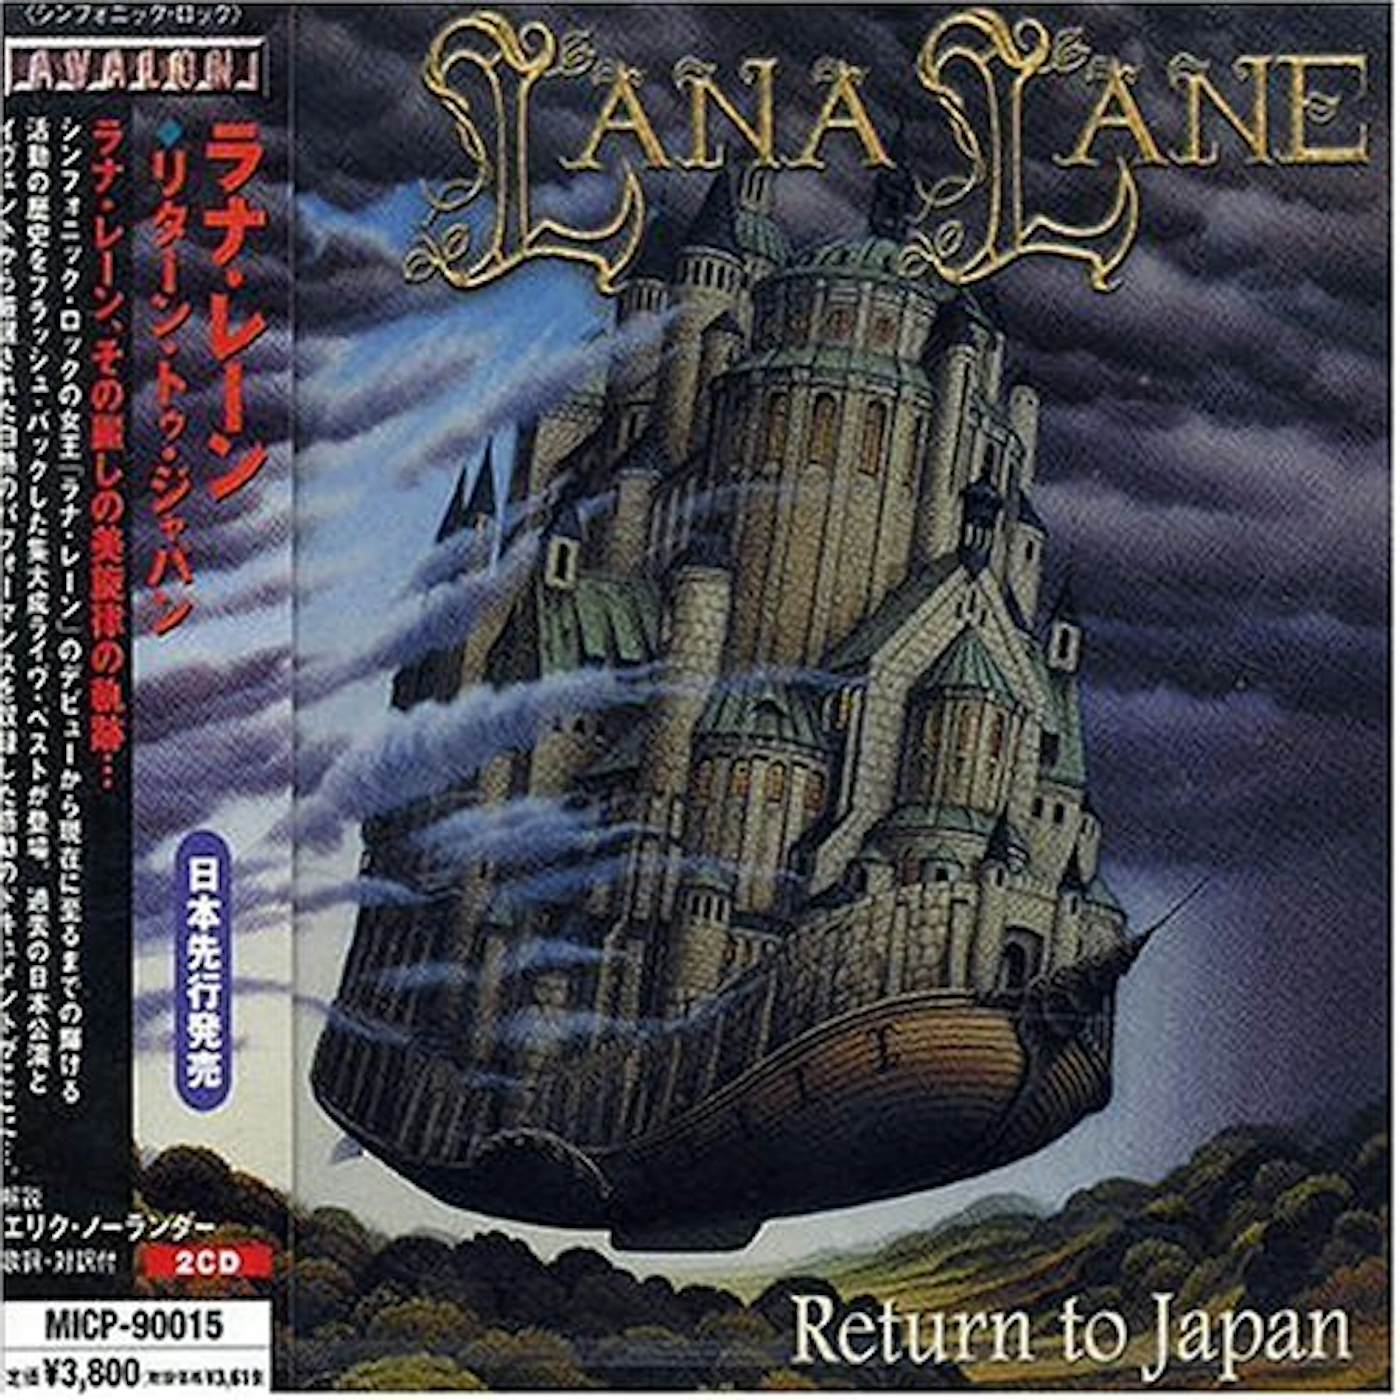 Lana Lane RETURN TO JAPAN CD